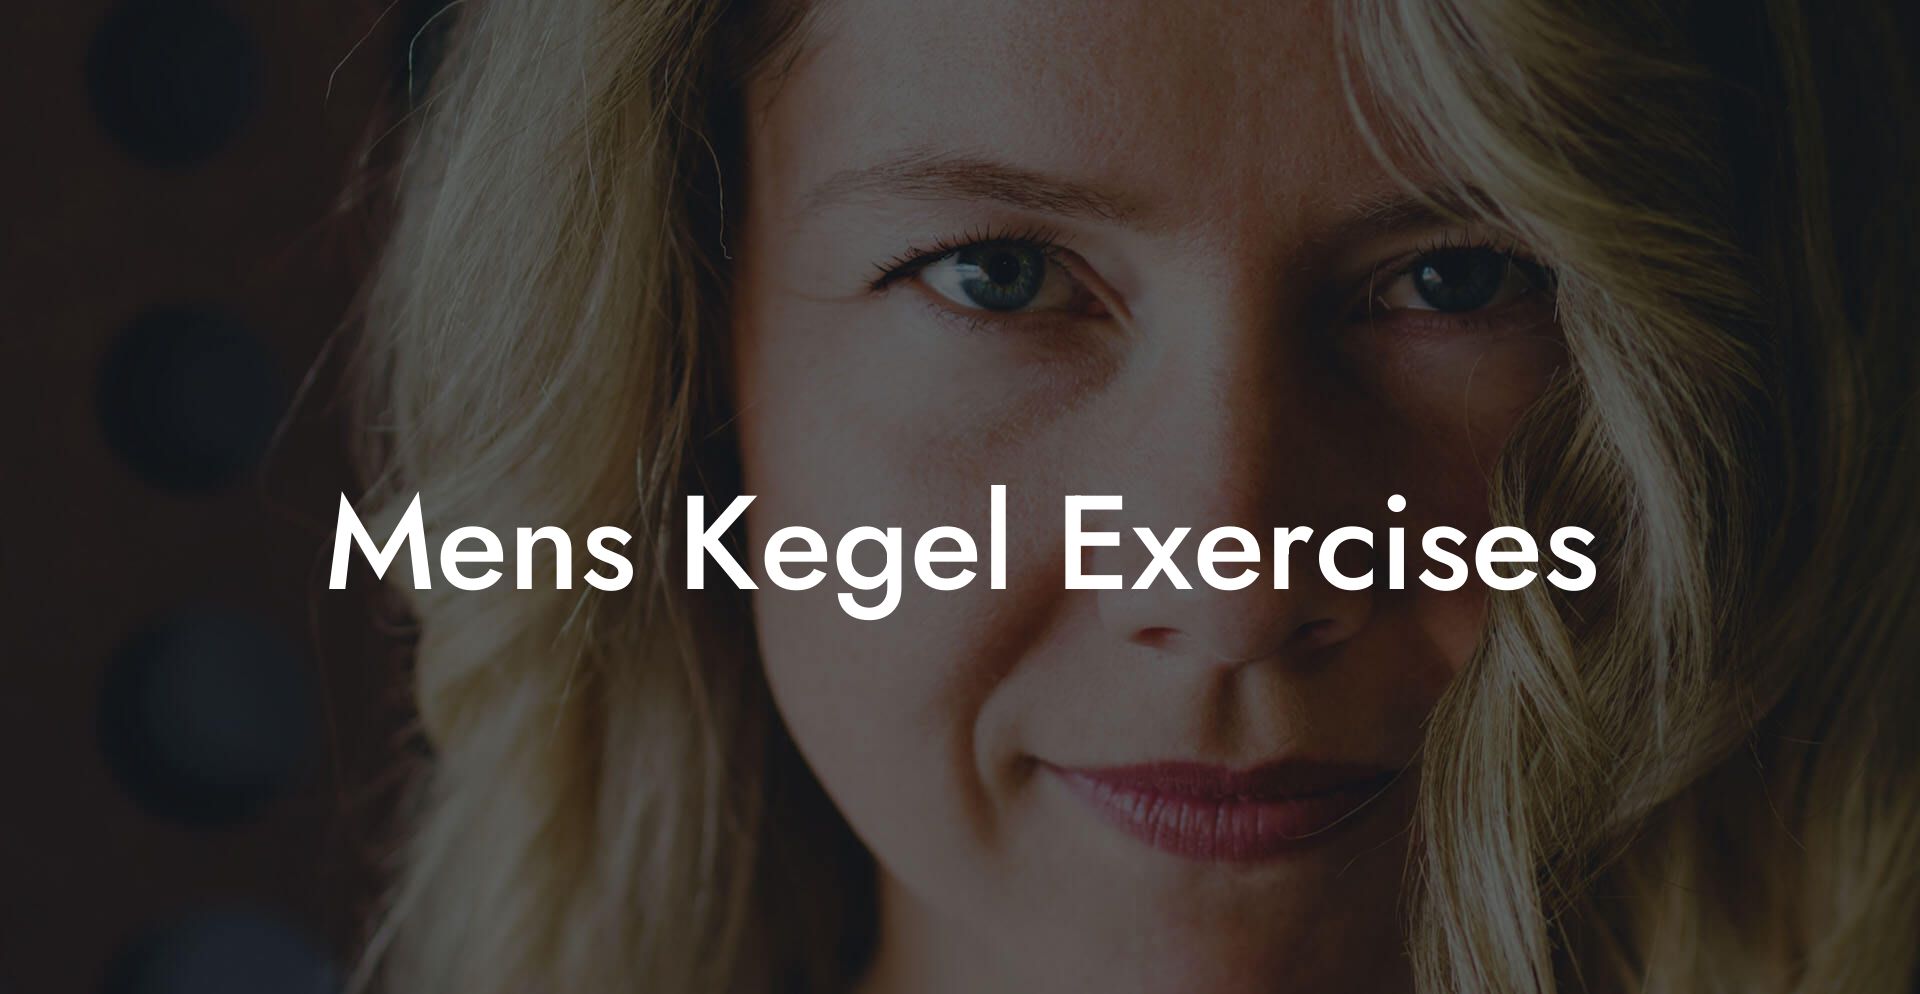 Men'S Kegel Exercises